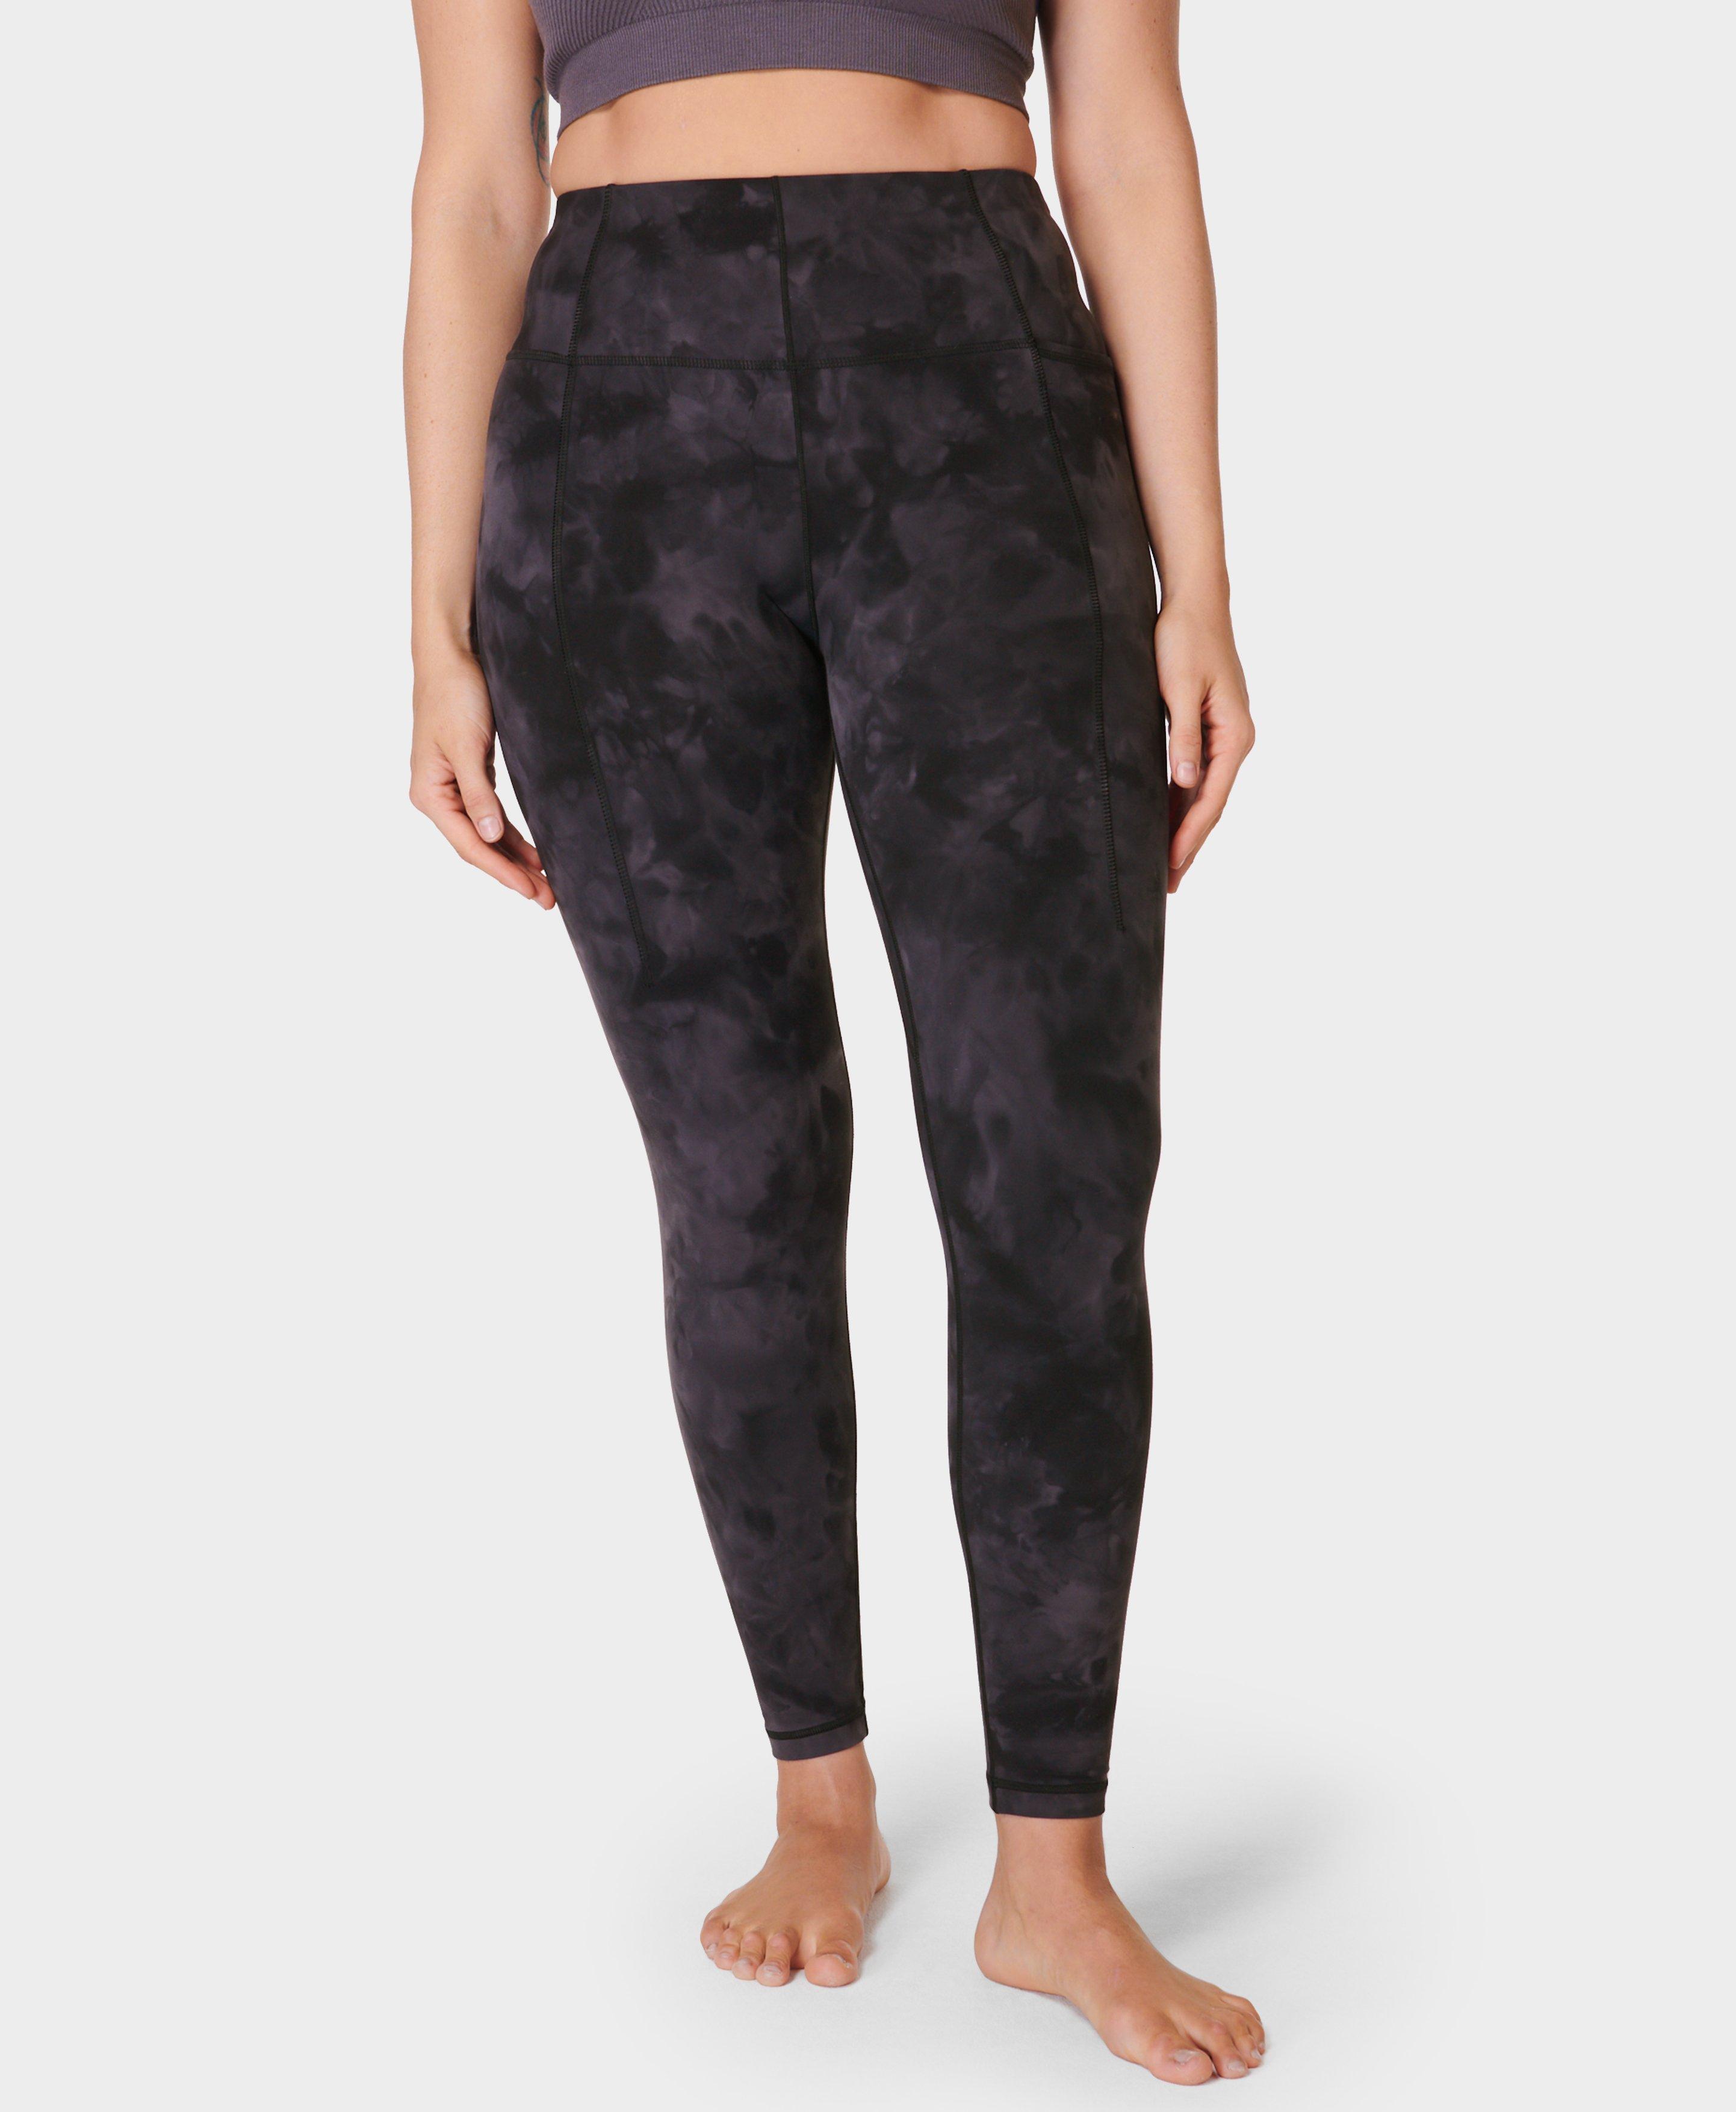 Super Soft Yoga Leggings - Black Spray Dye Print, Women's Leggings